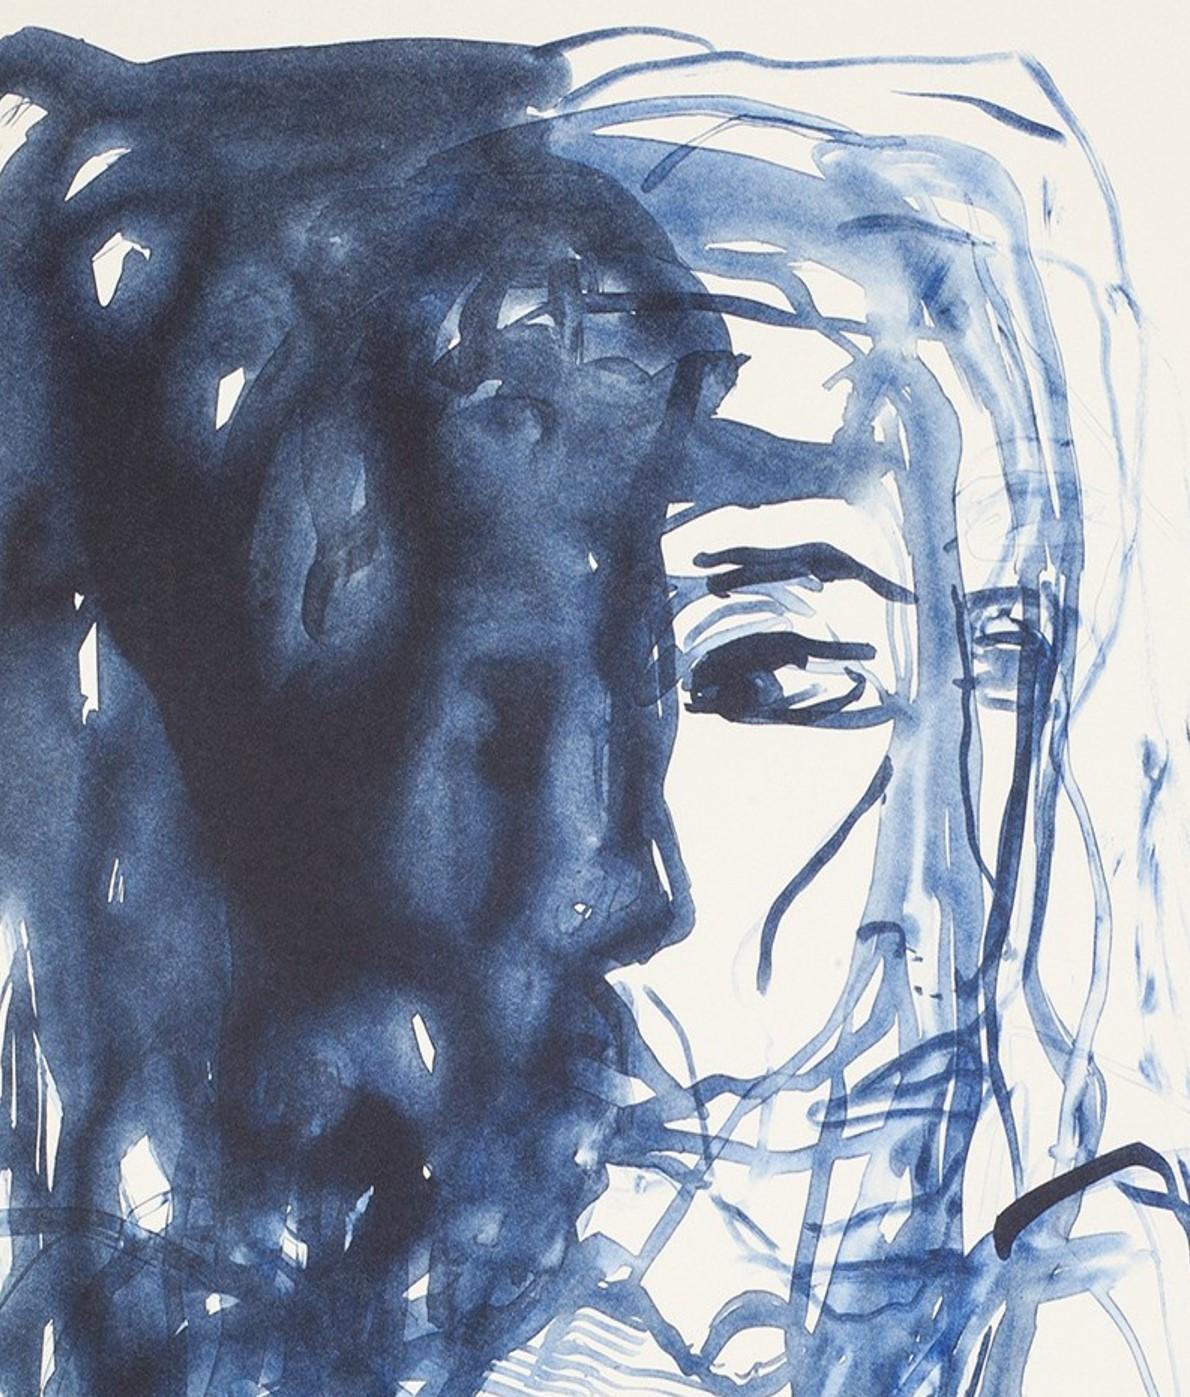 Après l'ombre - Emin, Contemporain, YBAs, Lithographie, Bleu, Portrait - Print de Tracey Emin